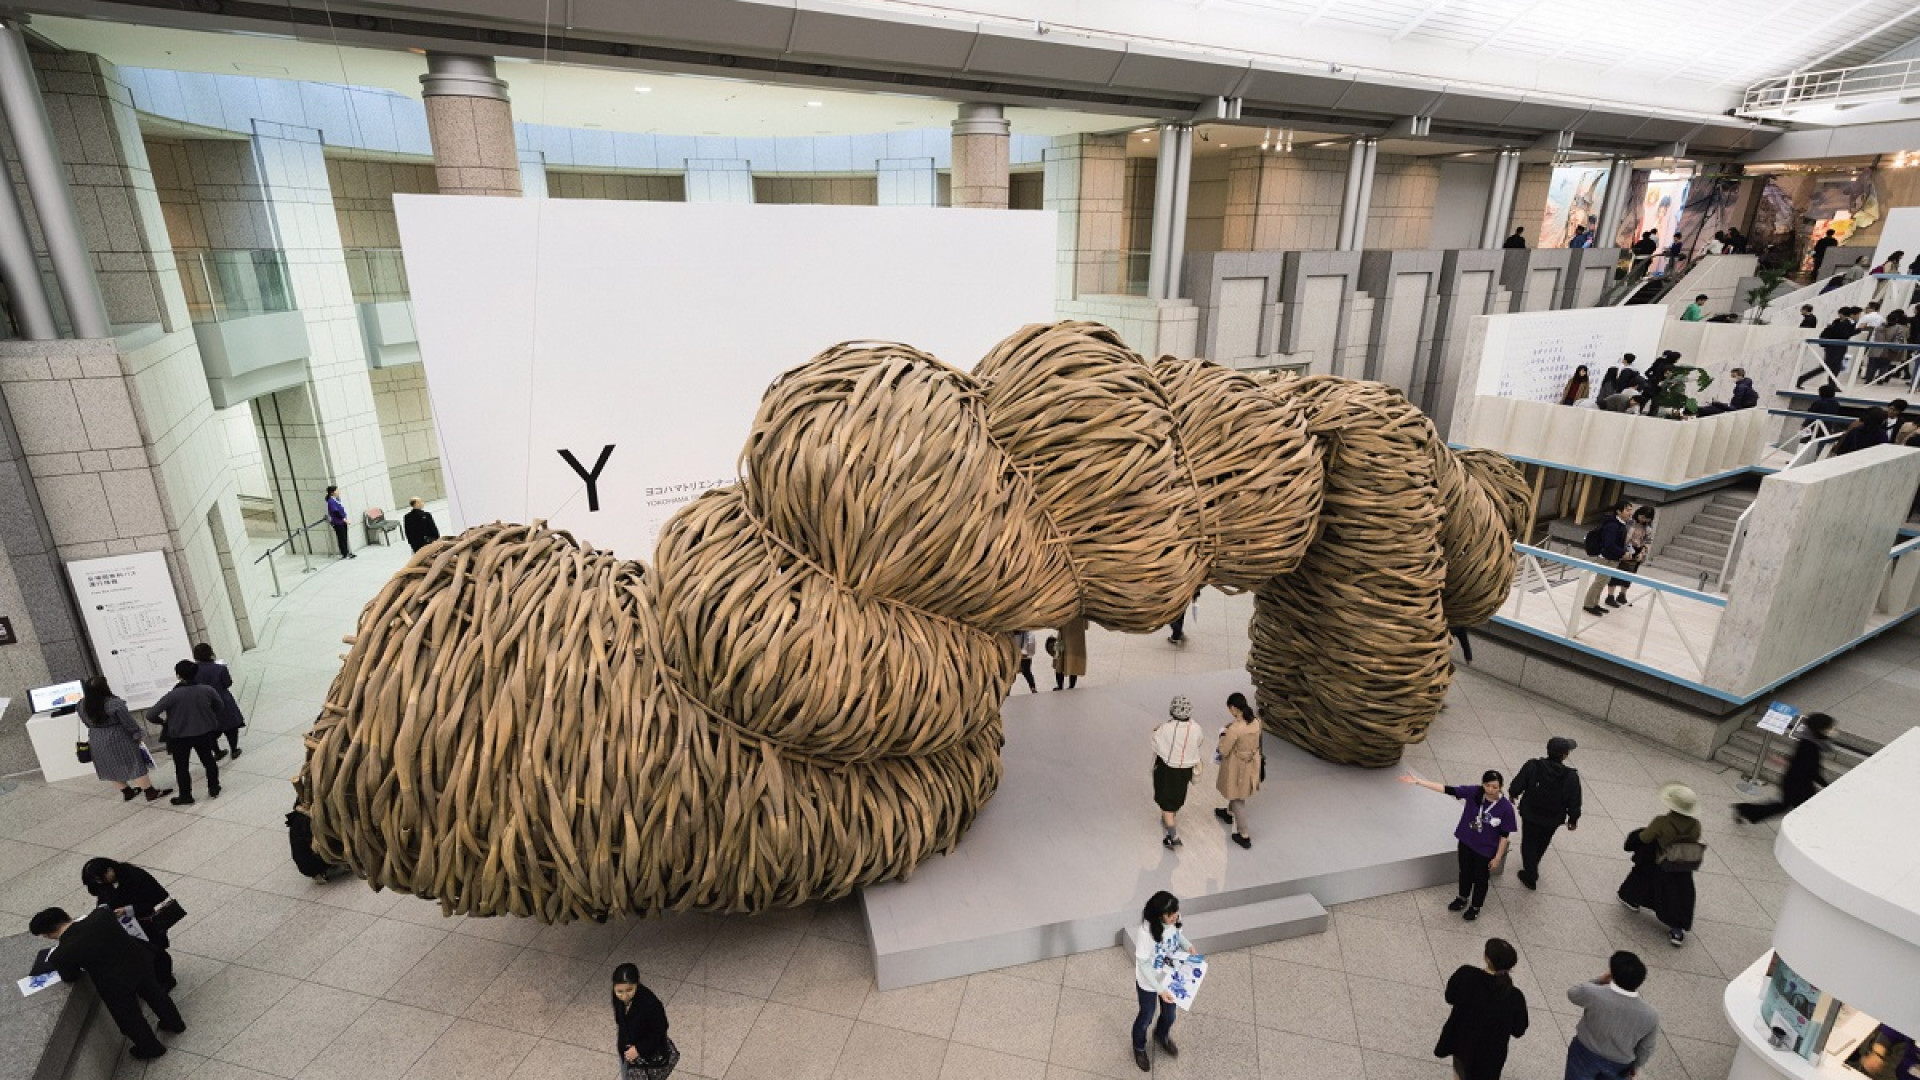 Triennale de Yokohama (une exposition internationale d'art contemporain organisée tous les 3 ans)